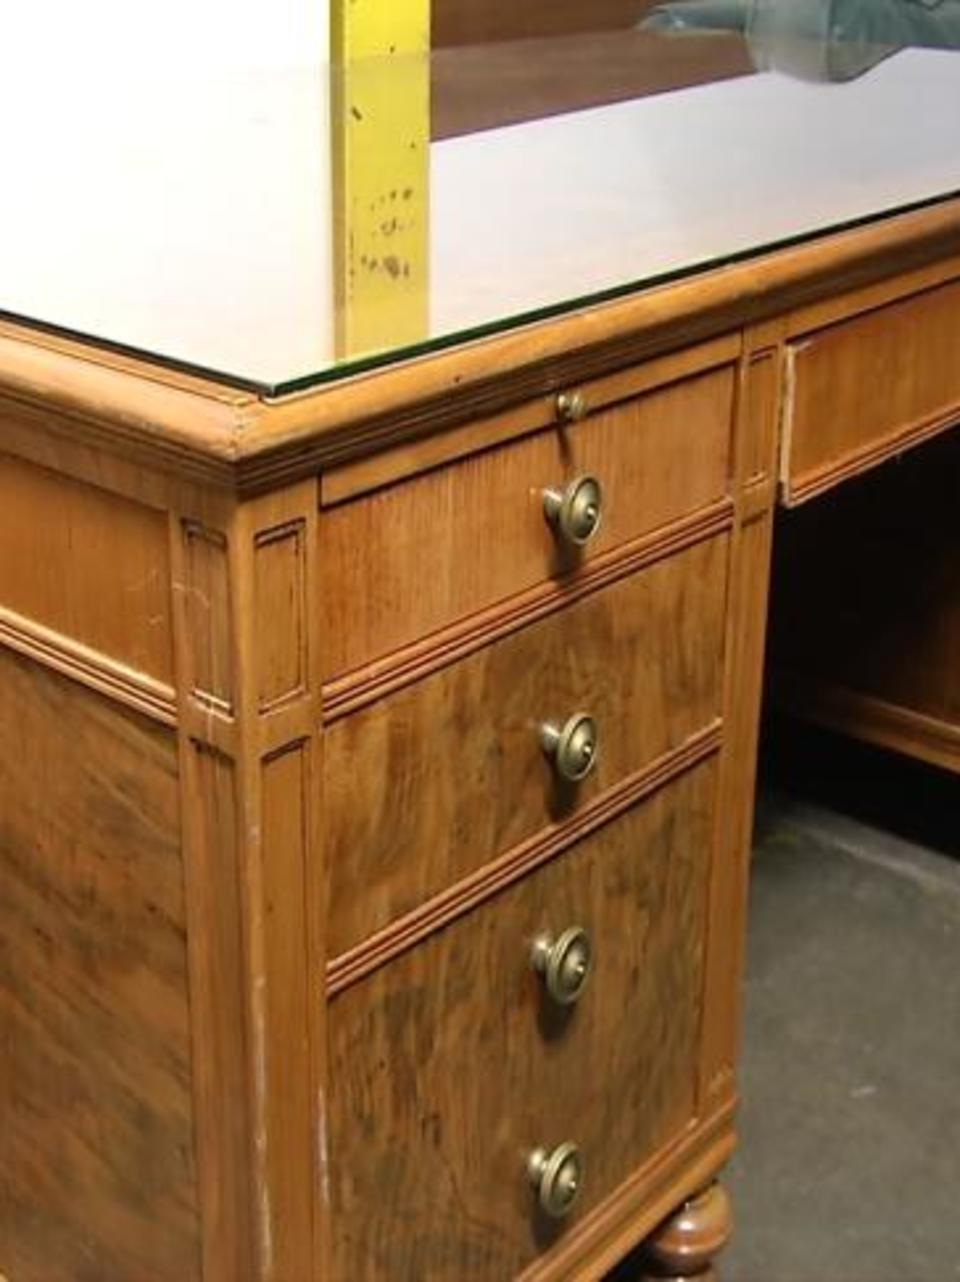 Three Historic Desks Missing From West Virginia Supreme Court Wchs